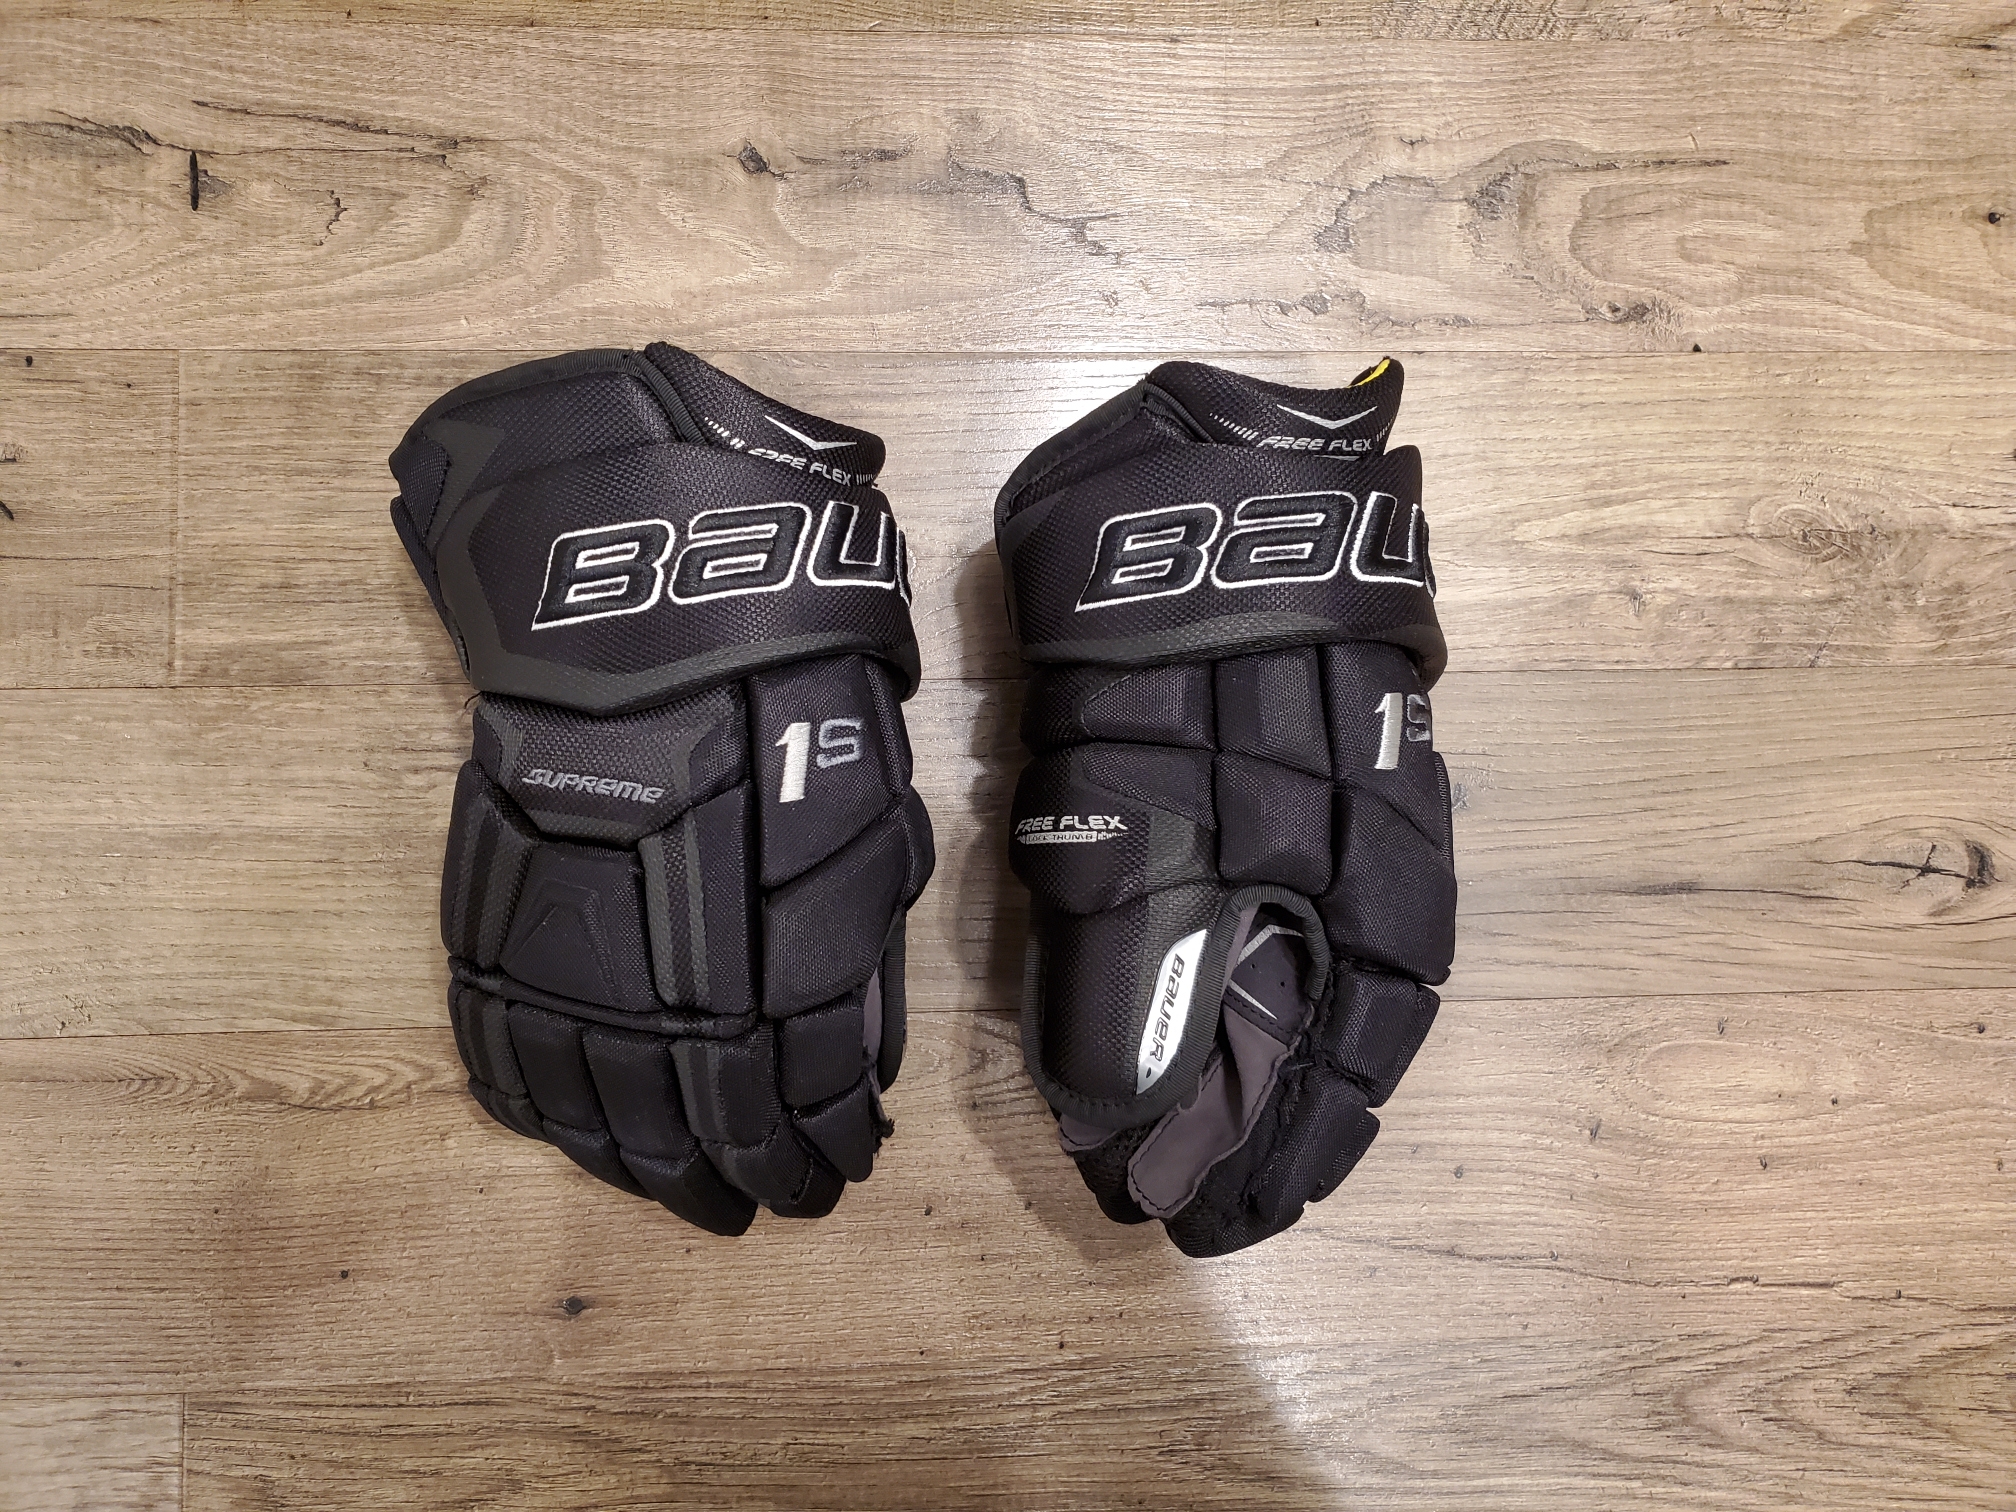 Bauer Supreme 1S hockey gloves - 14"